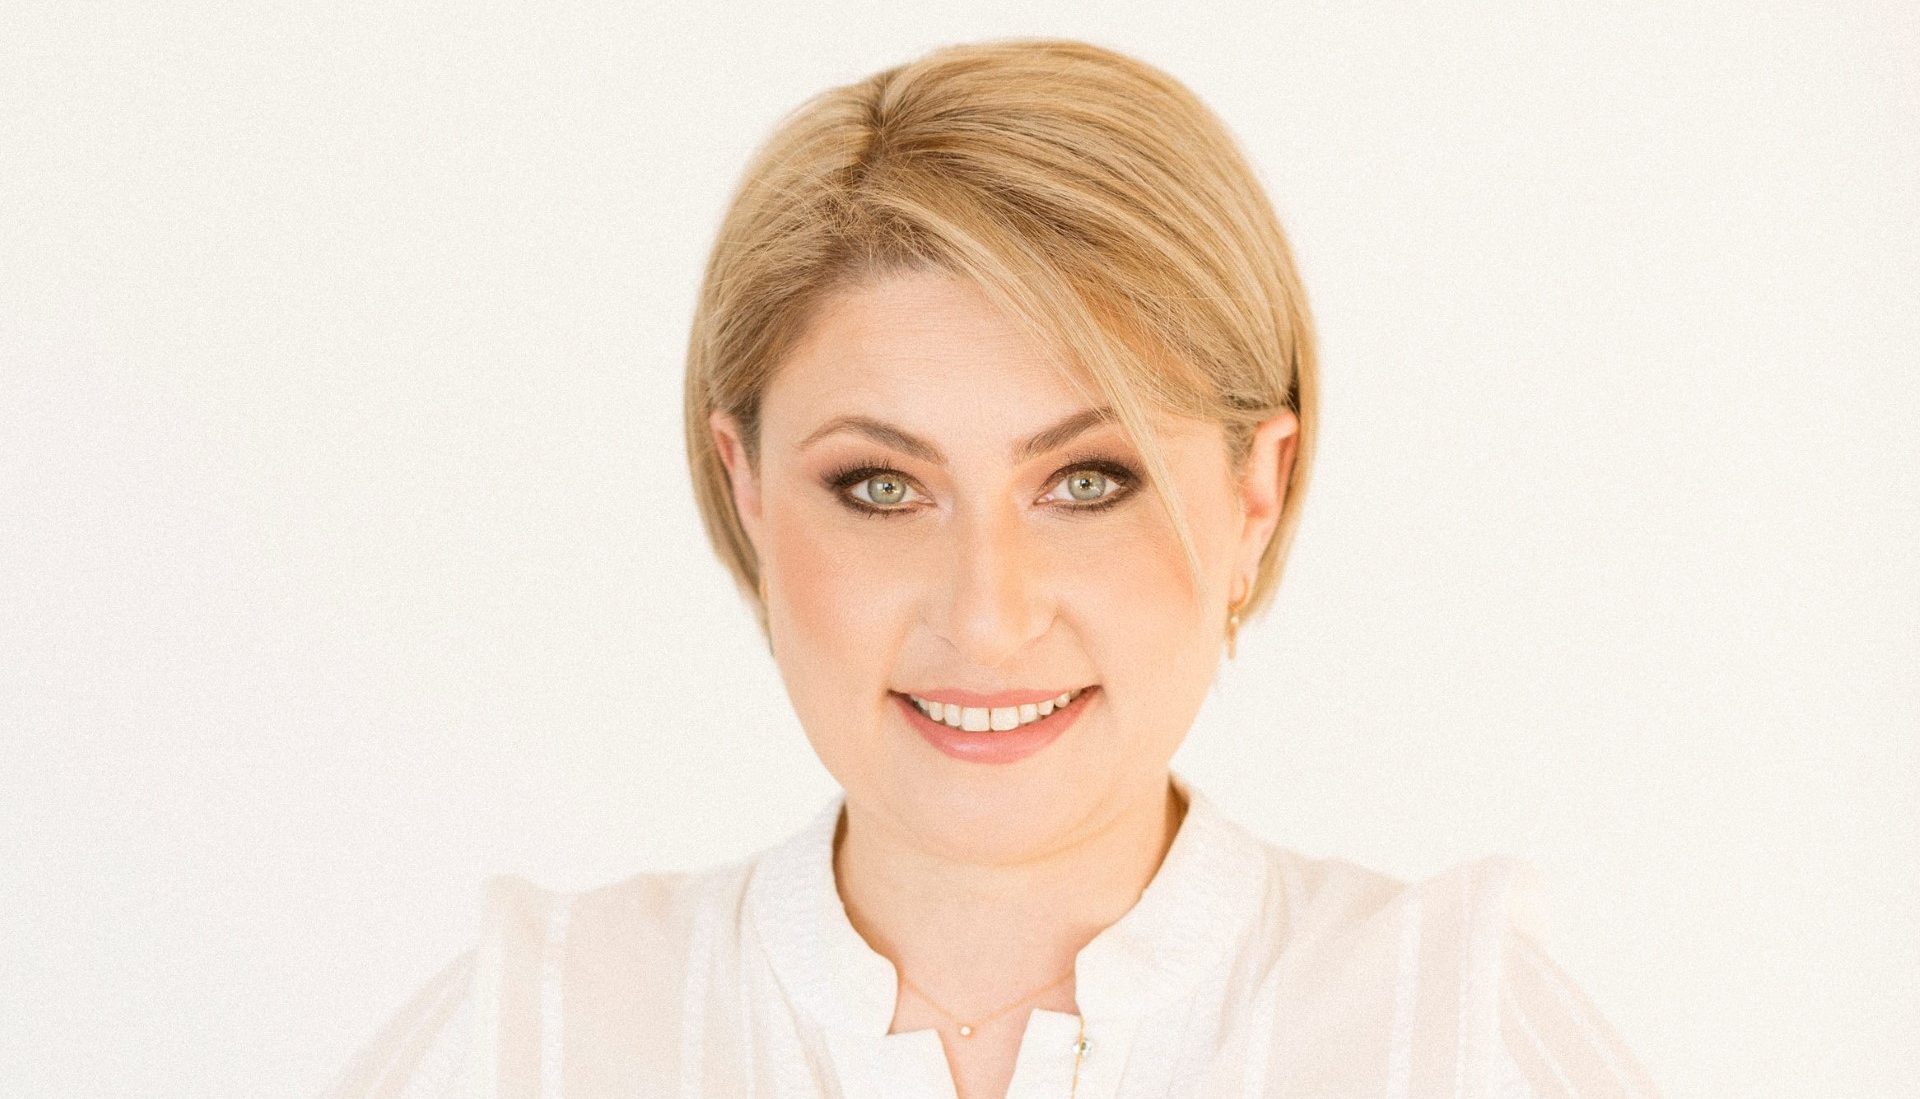 Χριστίνα Αλεξοπούλου: «Θα εργαστώ άοκνα για το καλύτερο μέλλον που έχουμε ήδη σχεδιάσει